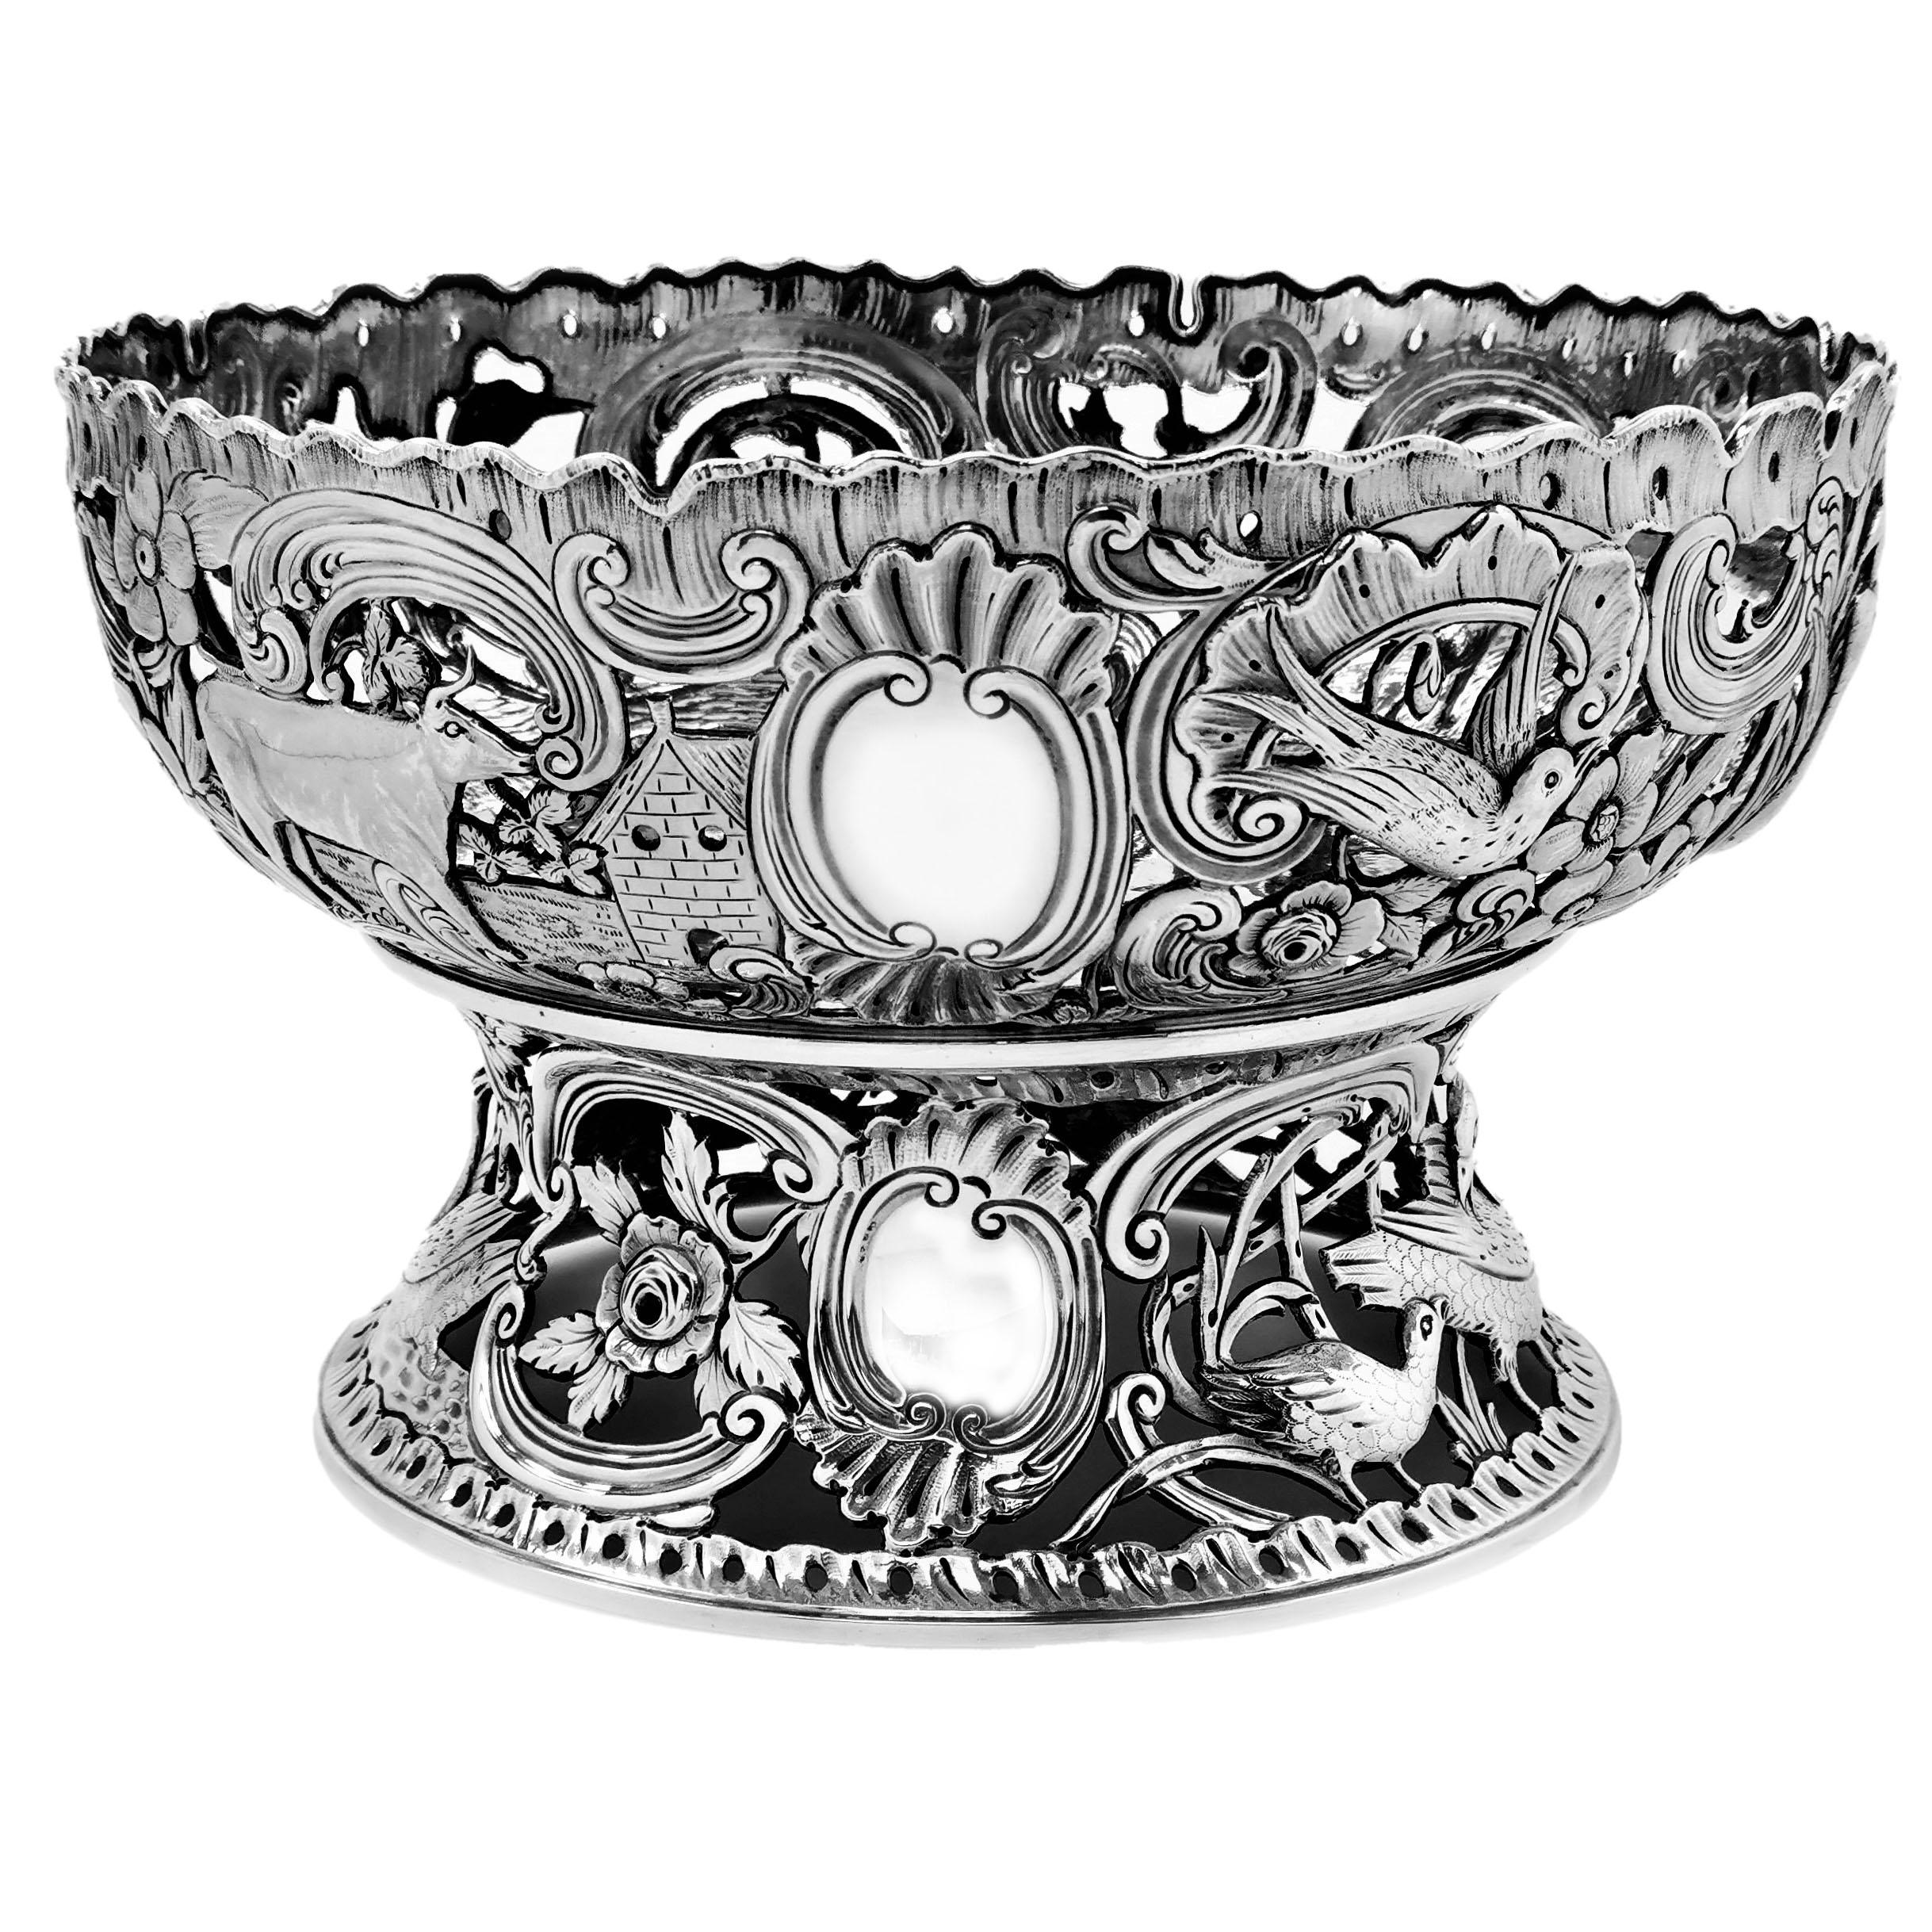 Eine prächtige antike viktorianische Silber Dish Ring mit passenden Bowl / Dish in der typischen antiken irischen georgischen Silber Dish Ringe erstellt. Dies ist ein besonders schönes Exemplar mit prächtigen, detailliert ziselierten und